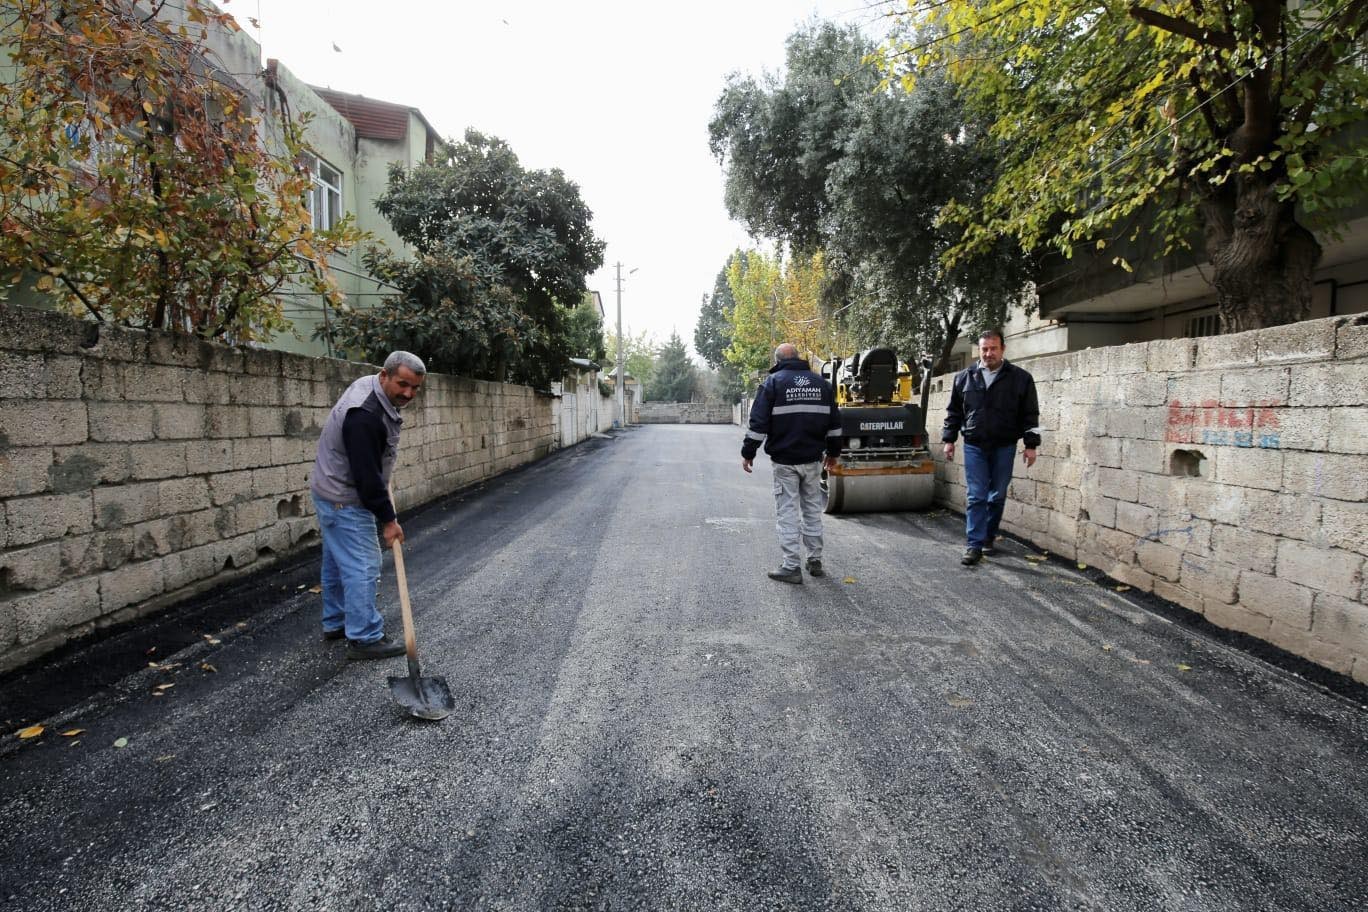 Kendi ürettiği asfaltı kullanmaya başladı #adiyaman